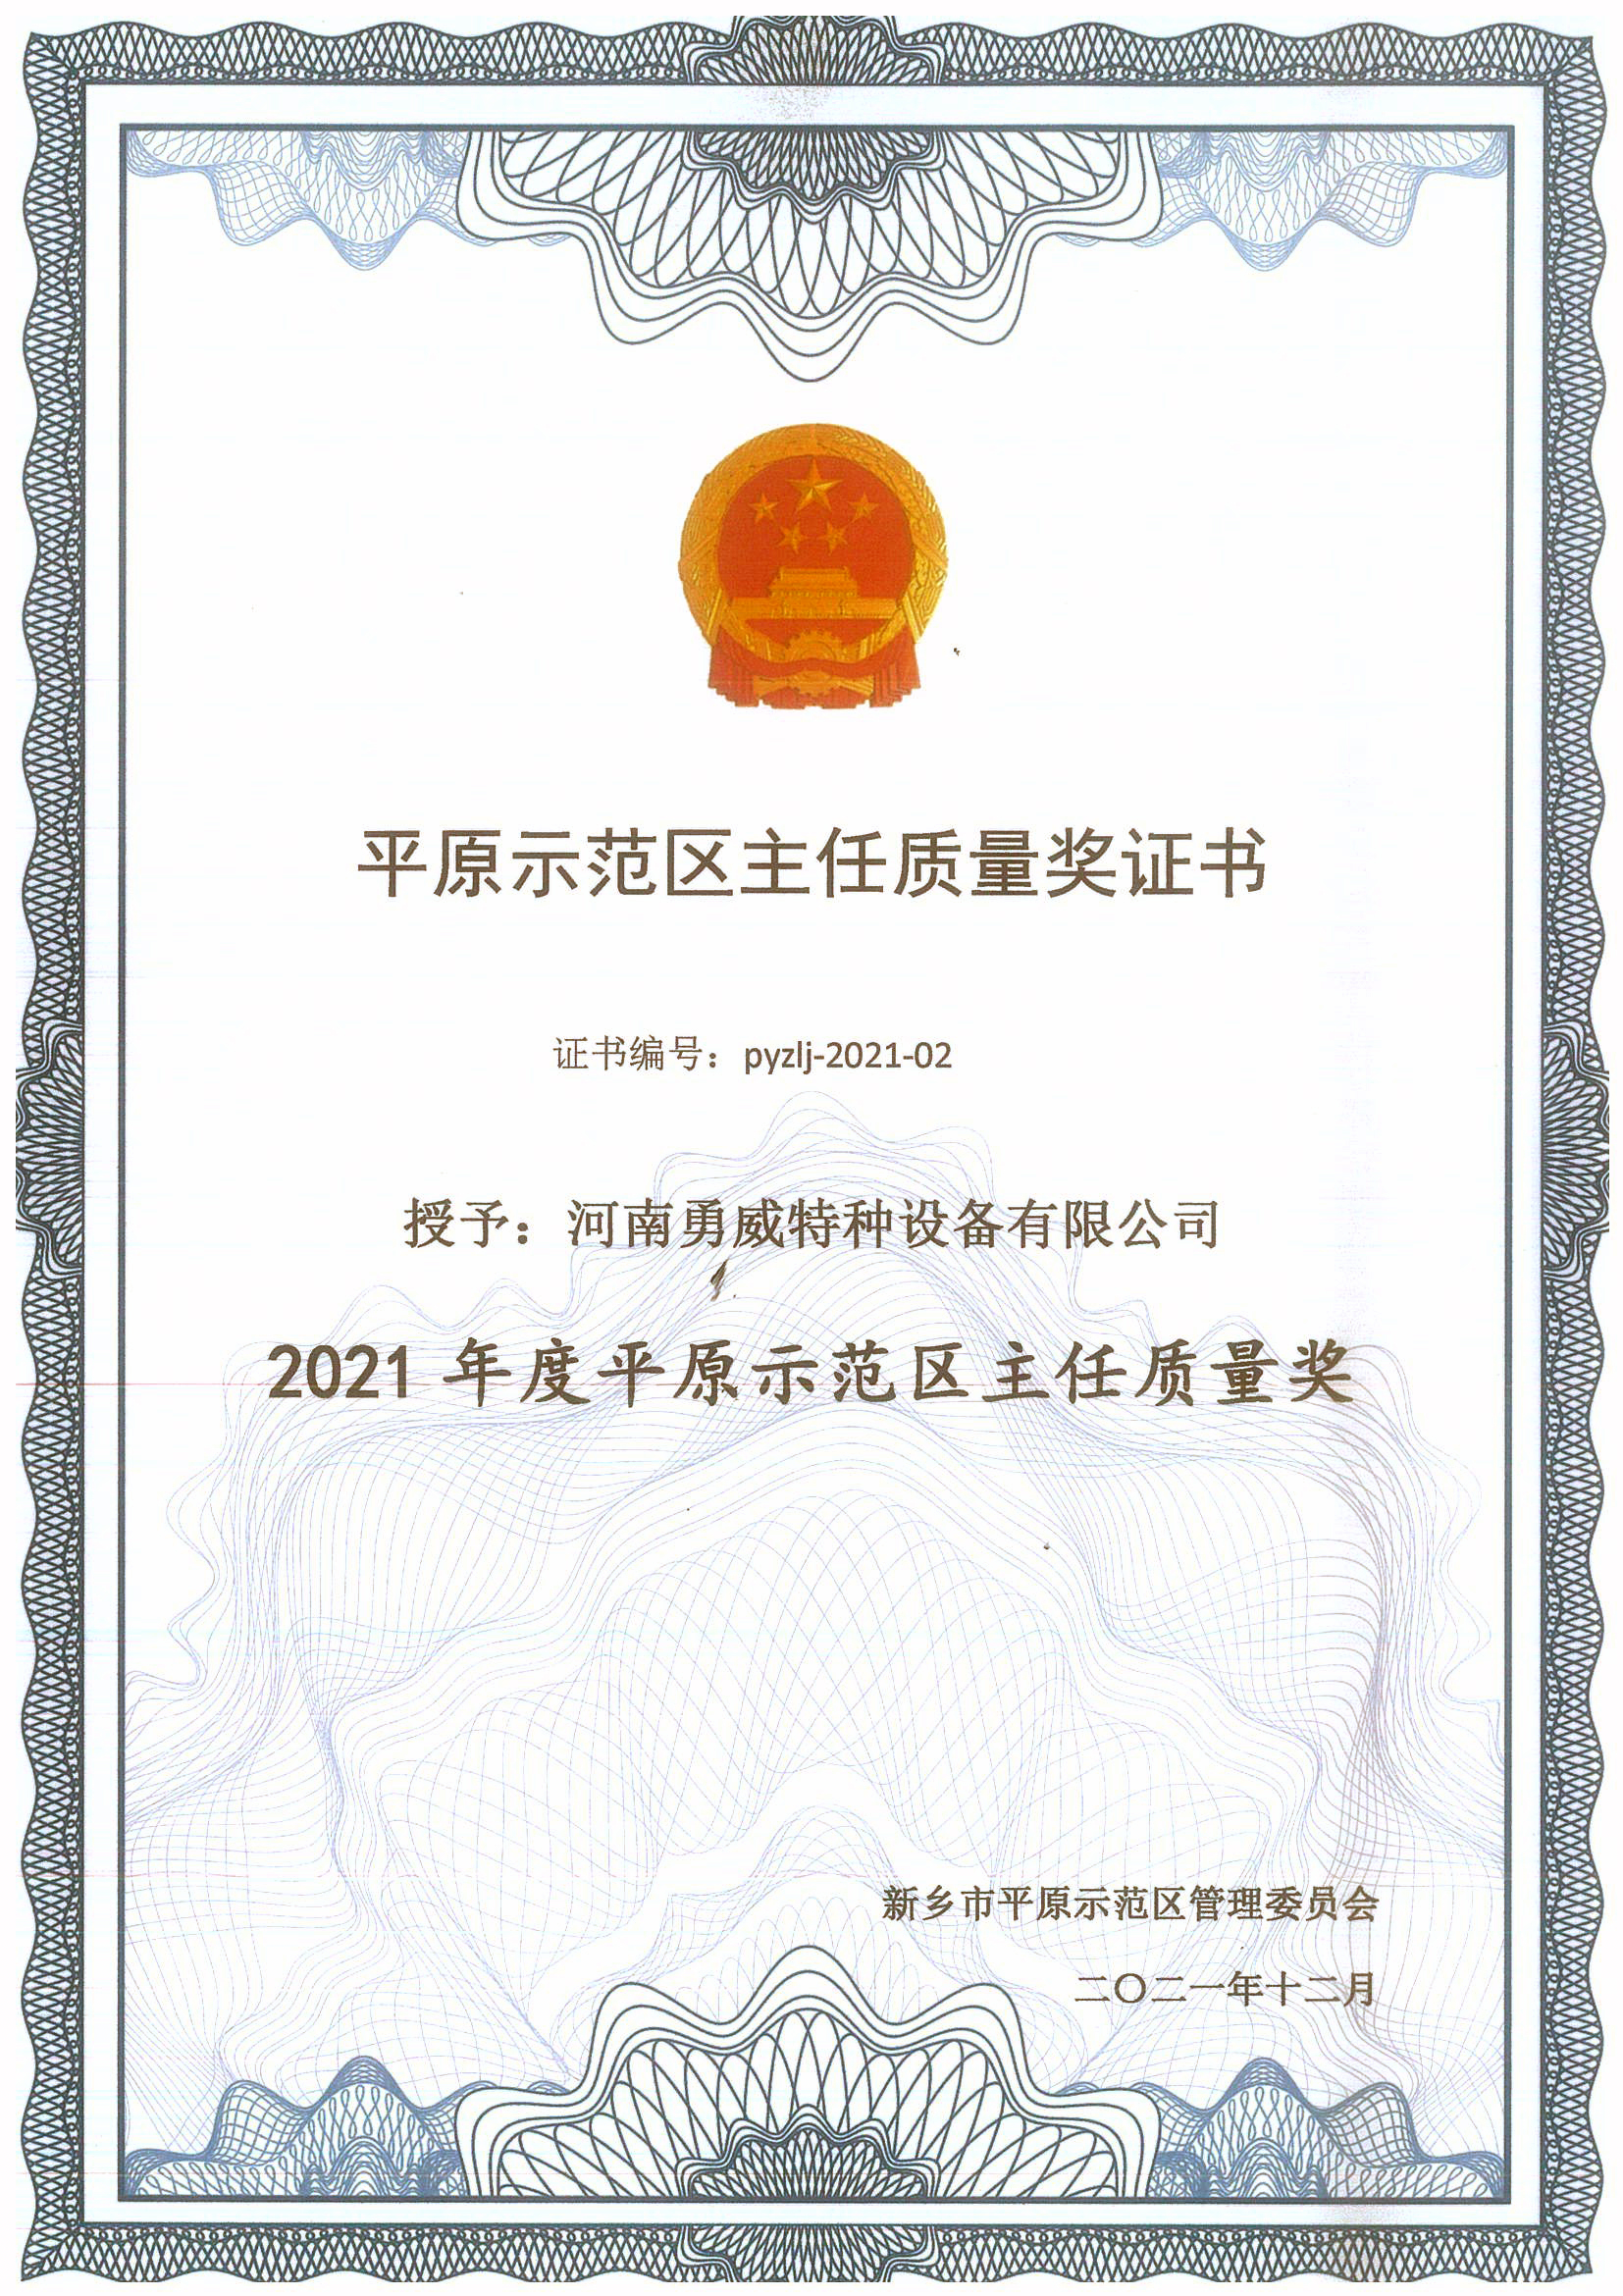 2021年平原示范区主任质量奖证书